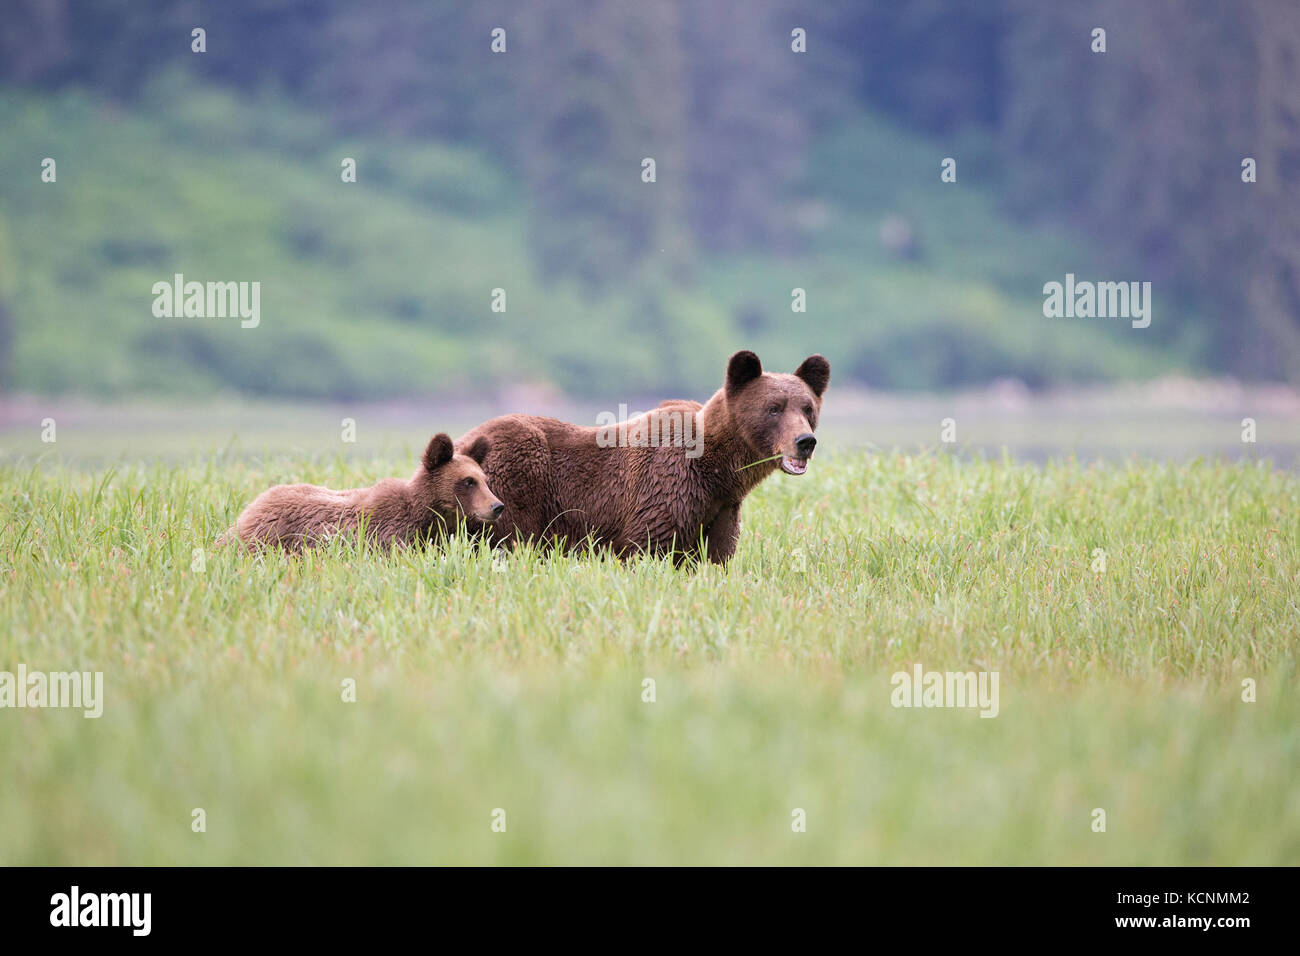 Grizzly Bear (Ursus arctos), Weibliche und horriblis Jährling cub, Essen von lyngbye Segge (carex lyngbyei), das khutzeymateen Grizzly Bär Heiligtum, British Columbia, Kanada. Stockfoto